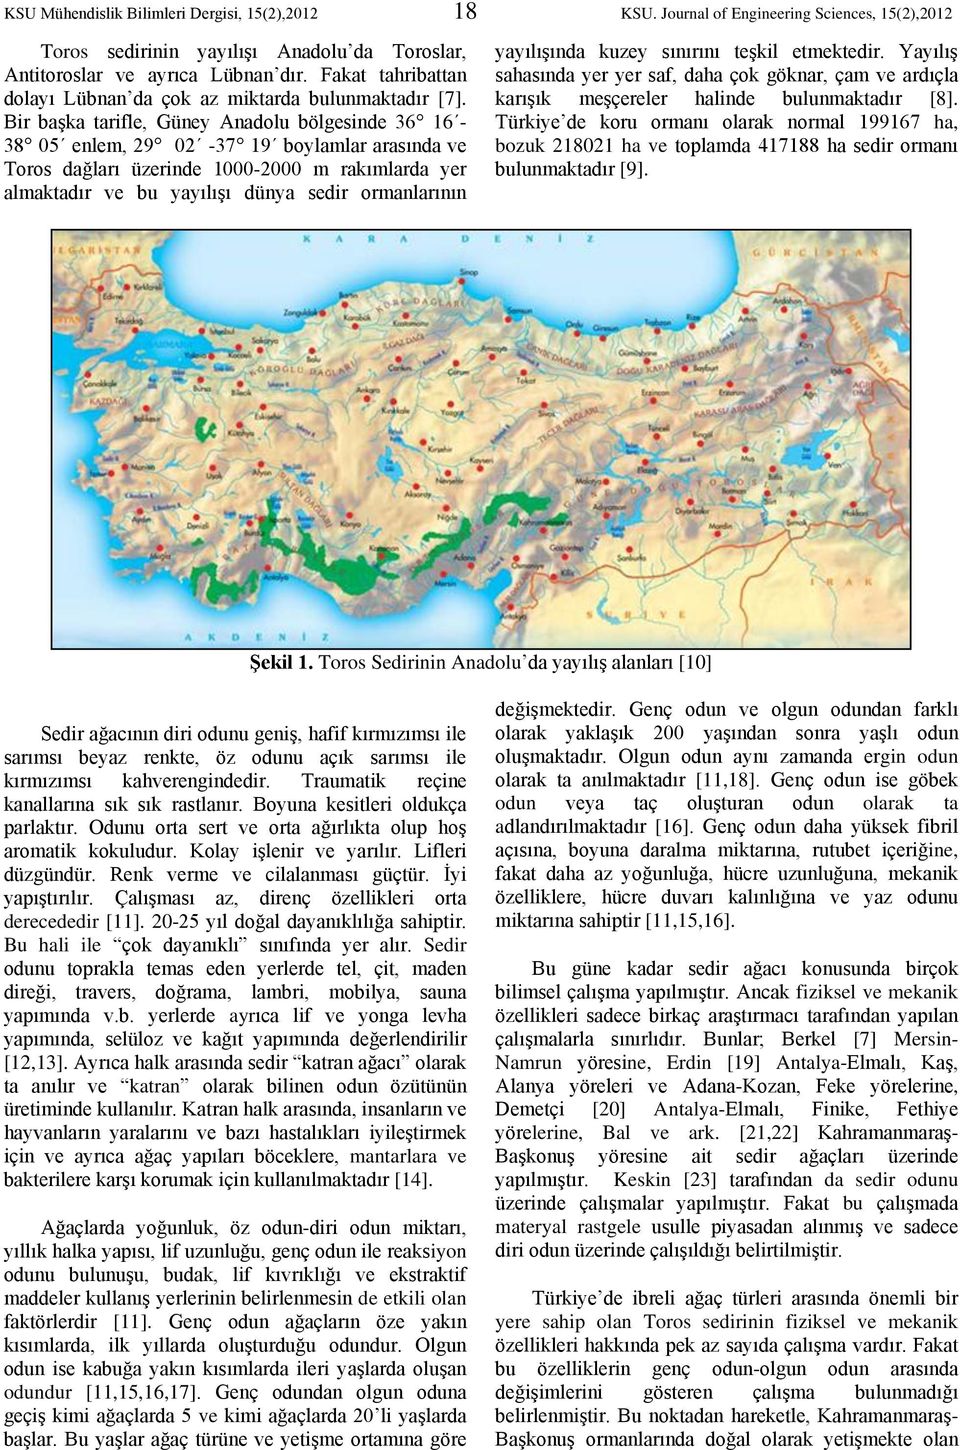 ir başka tarifle, Güney Anadolu bölgesinde 36 16-38 5 enlem, 29 2-37 19 boylamlar arasında ve Toros dağları üzerinde 1-2 m rakımlarda yer almaktadır ve bu yayılışı dünya sedir ormanlarının